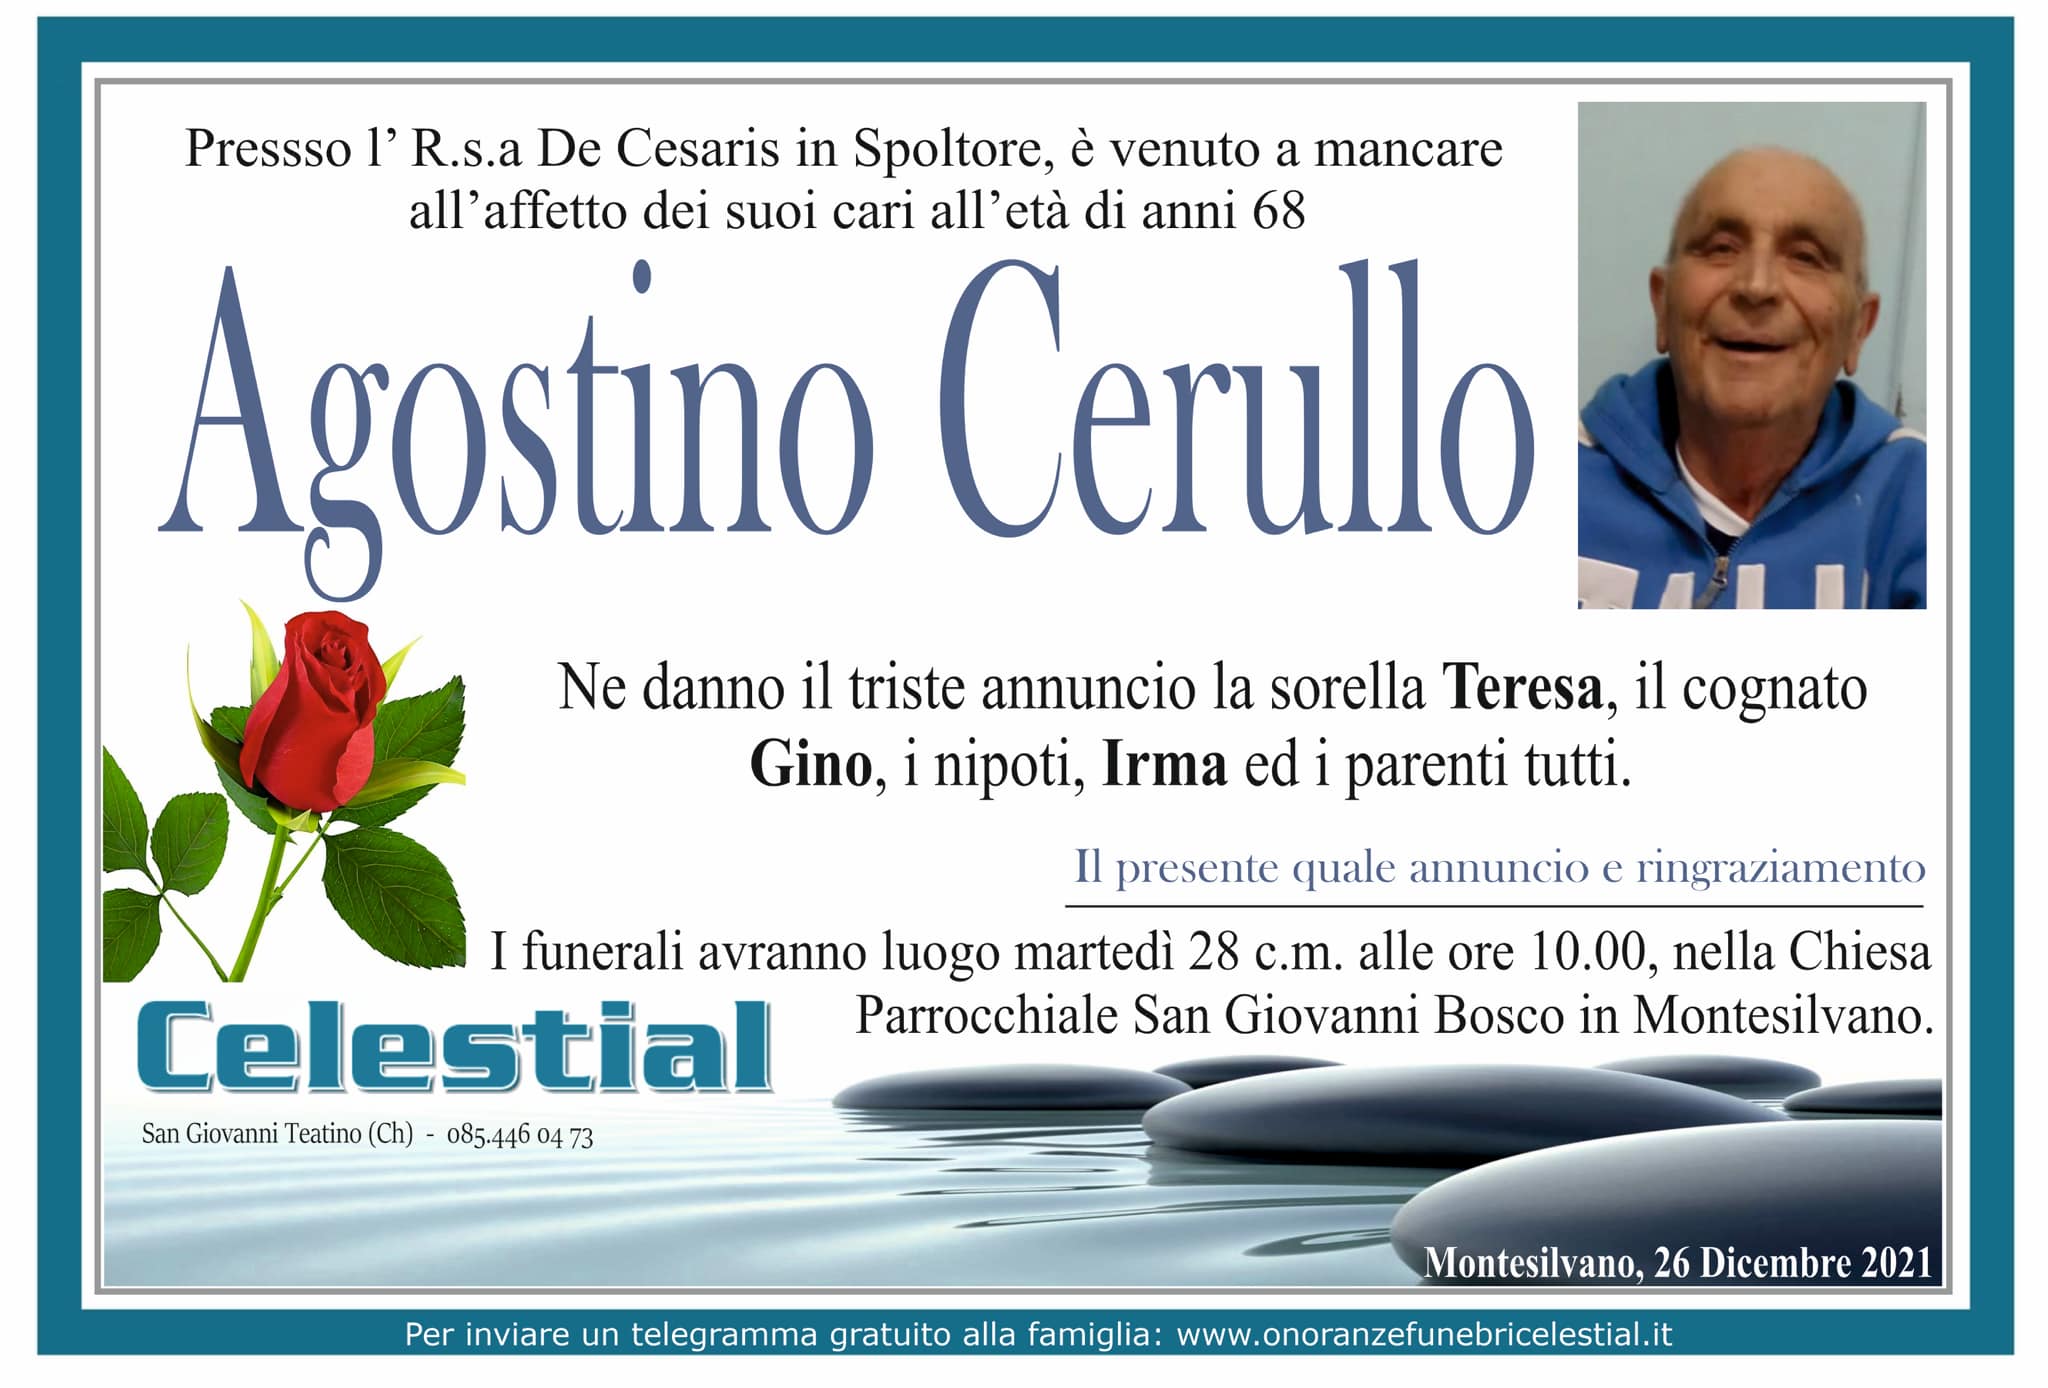 Agostino Cerullo